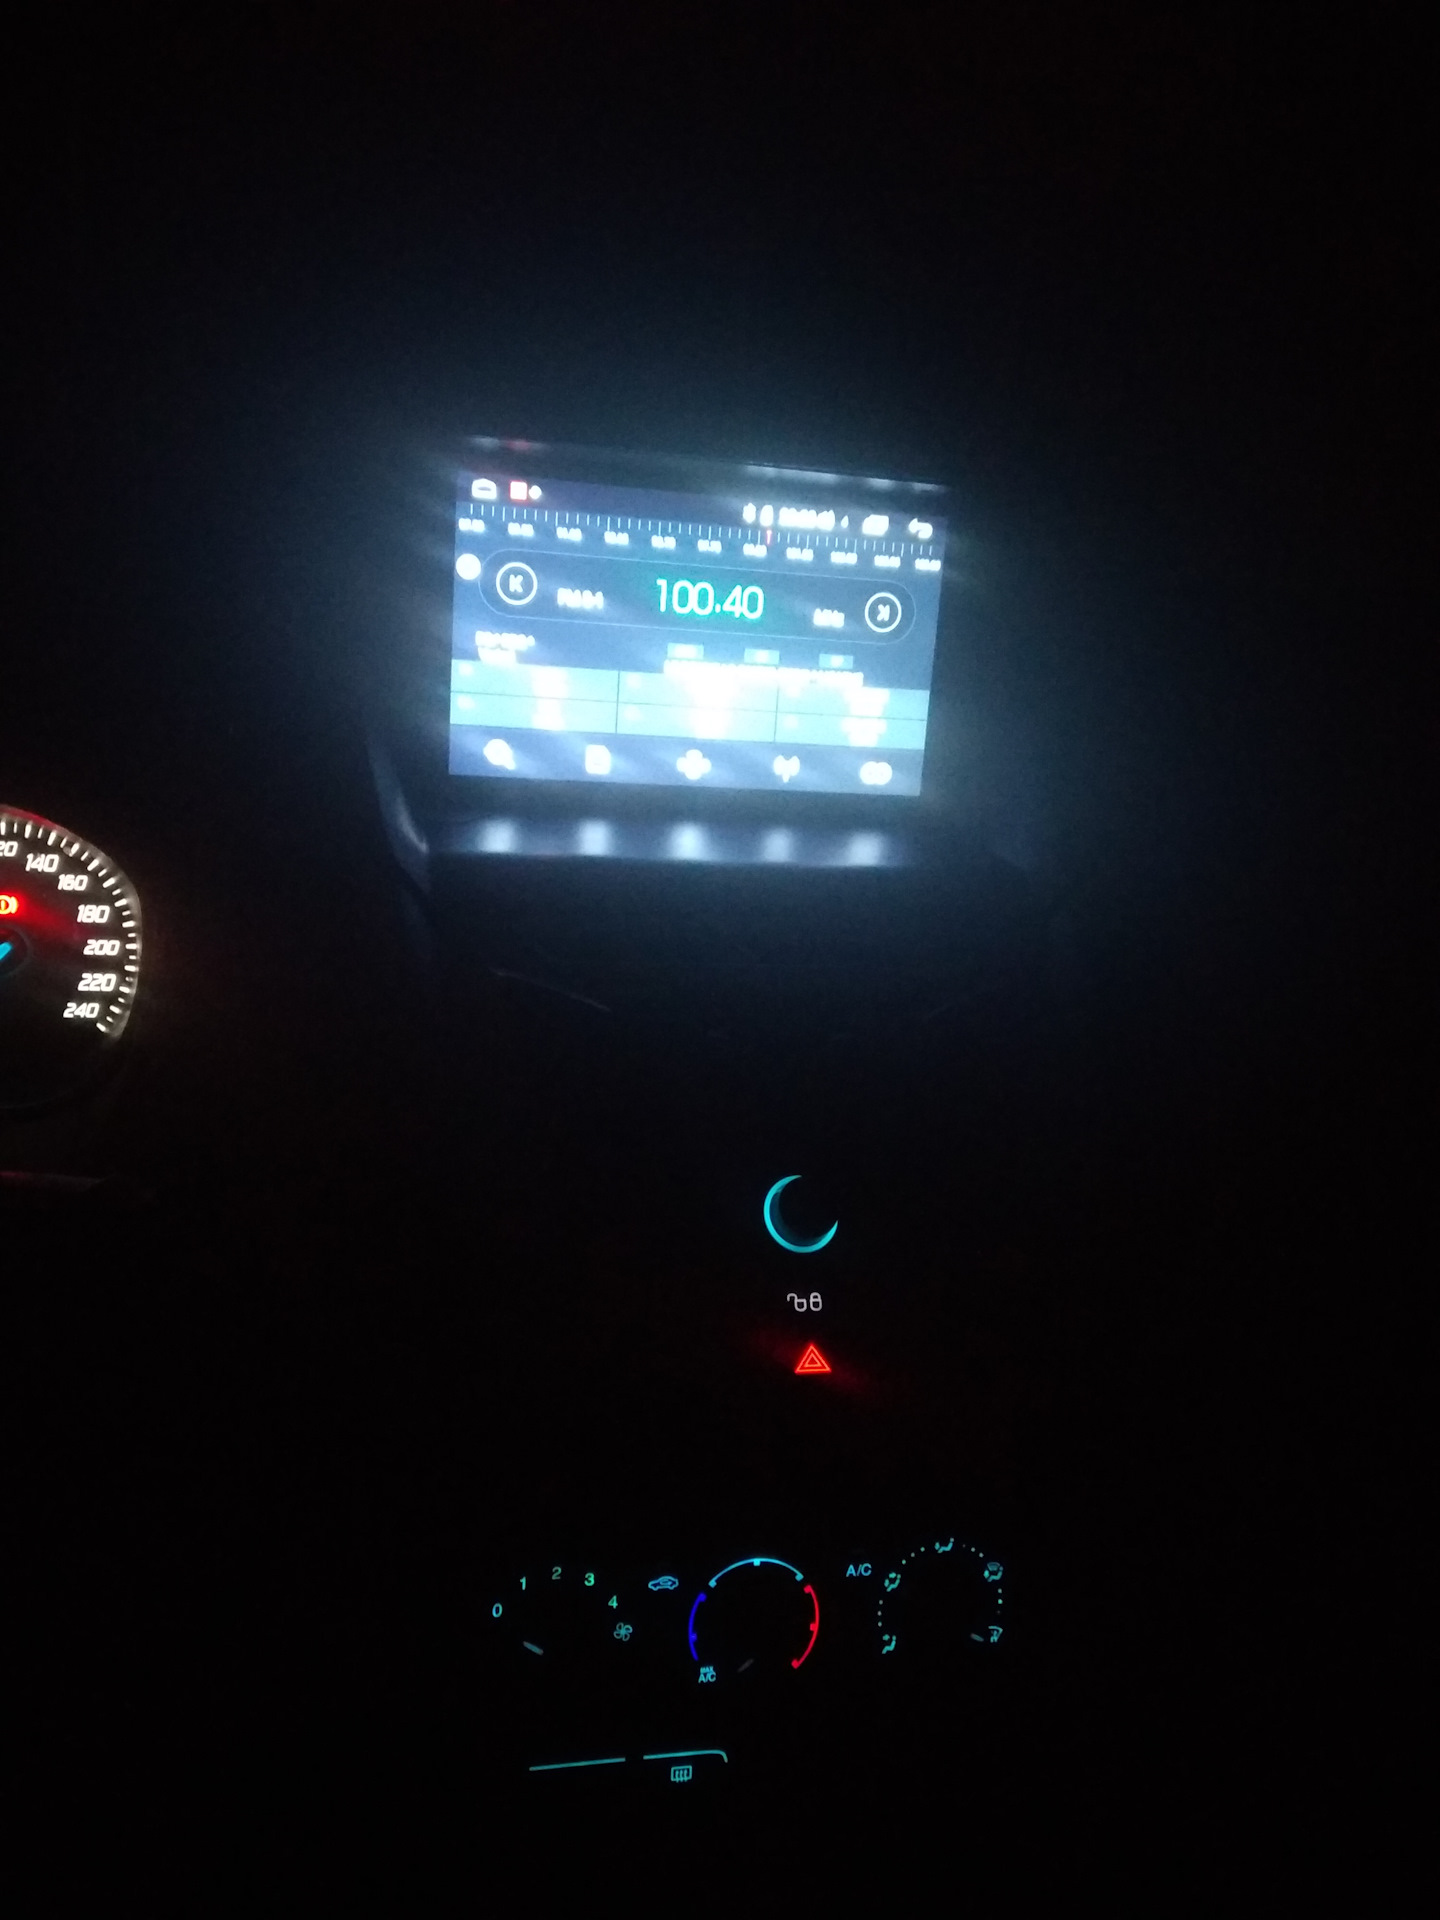 Китайская магнитола подсветка кнопок. Магнитола АСV подсветка кнопок. RGB подсветка кнопок Android magnitola. Подсветка кнопок Форд фокус 1. Подсветка кнопок магнитолы андроид.